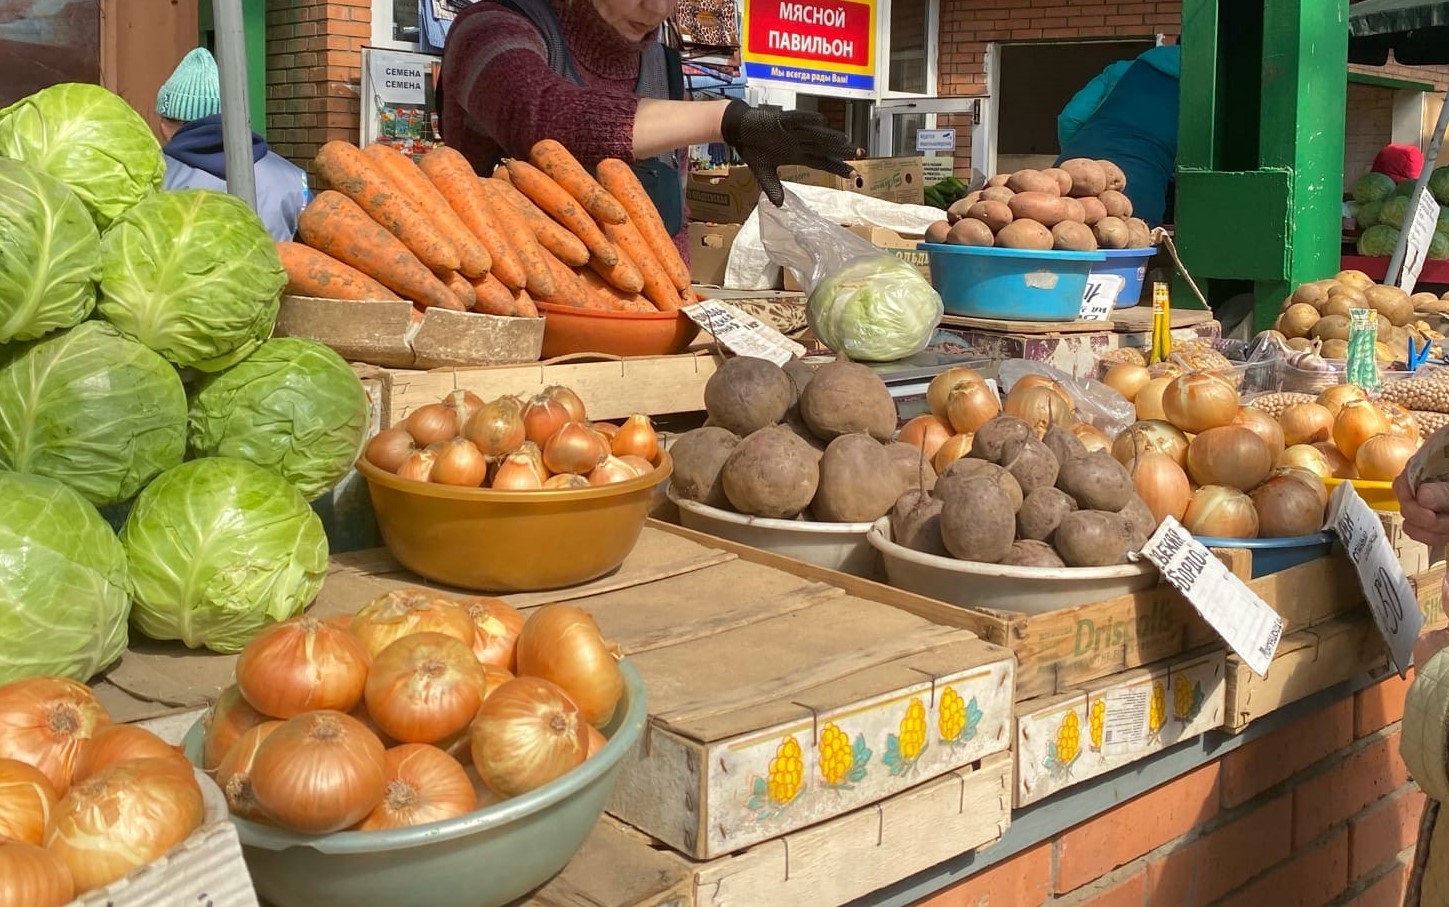 Порча овощей на складах и массовый убой птиц: из-за чего в Марий Эл подорожали продукты